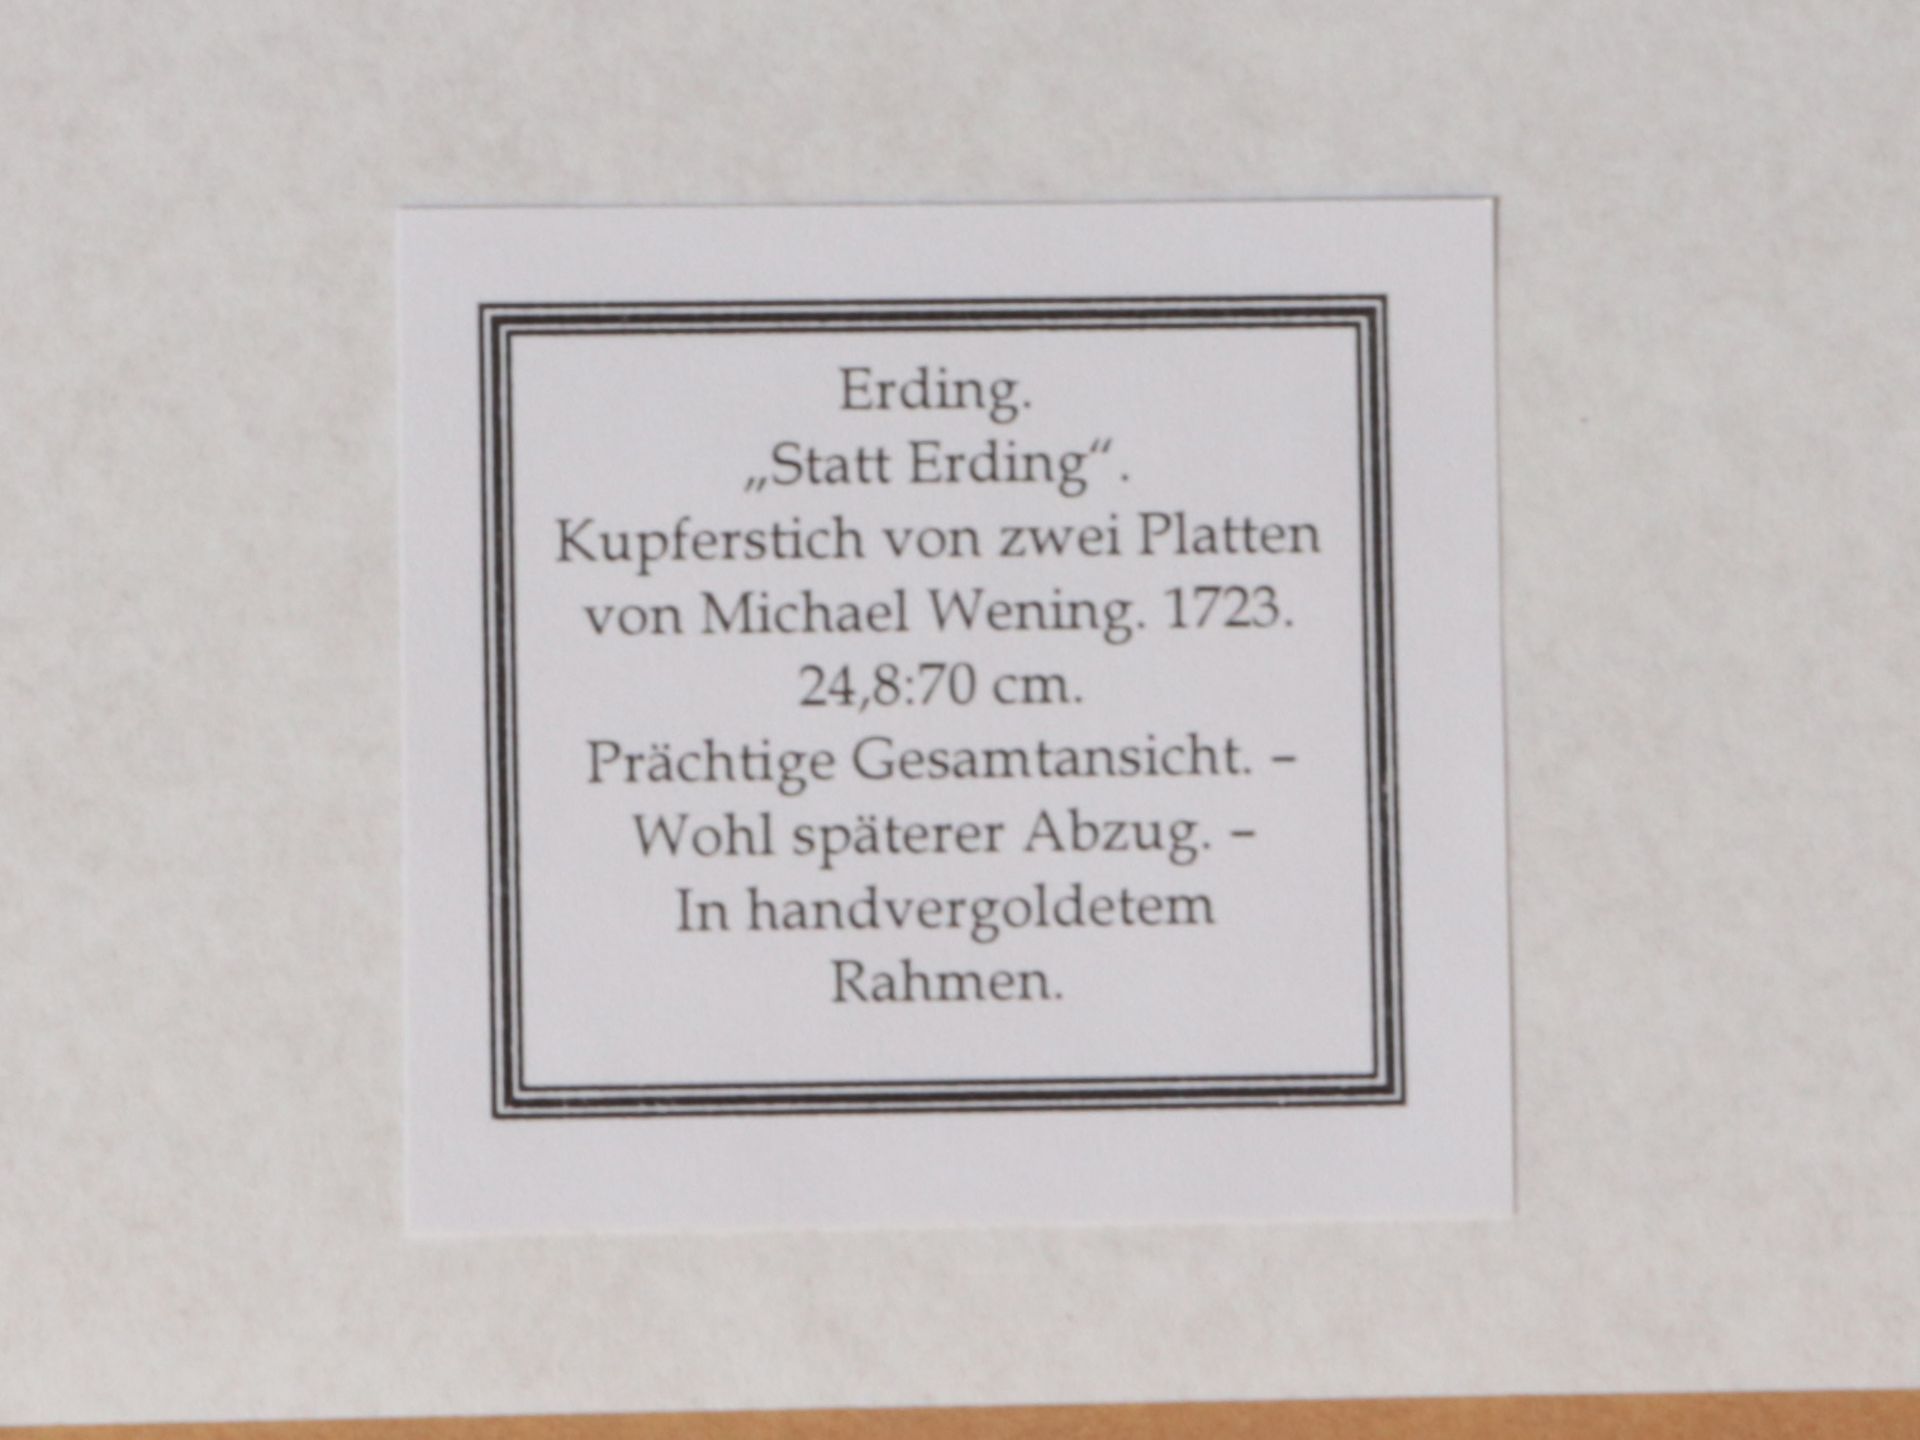 Erding - Gesamtansicht - Image 3 of 3